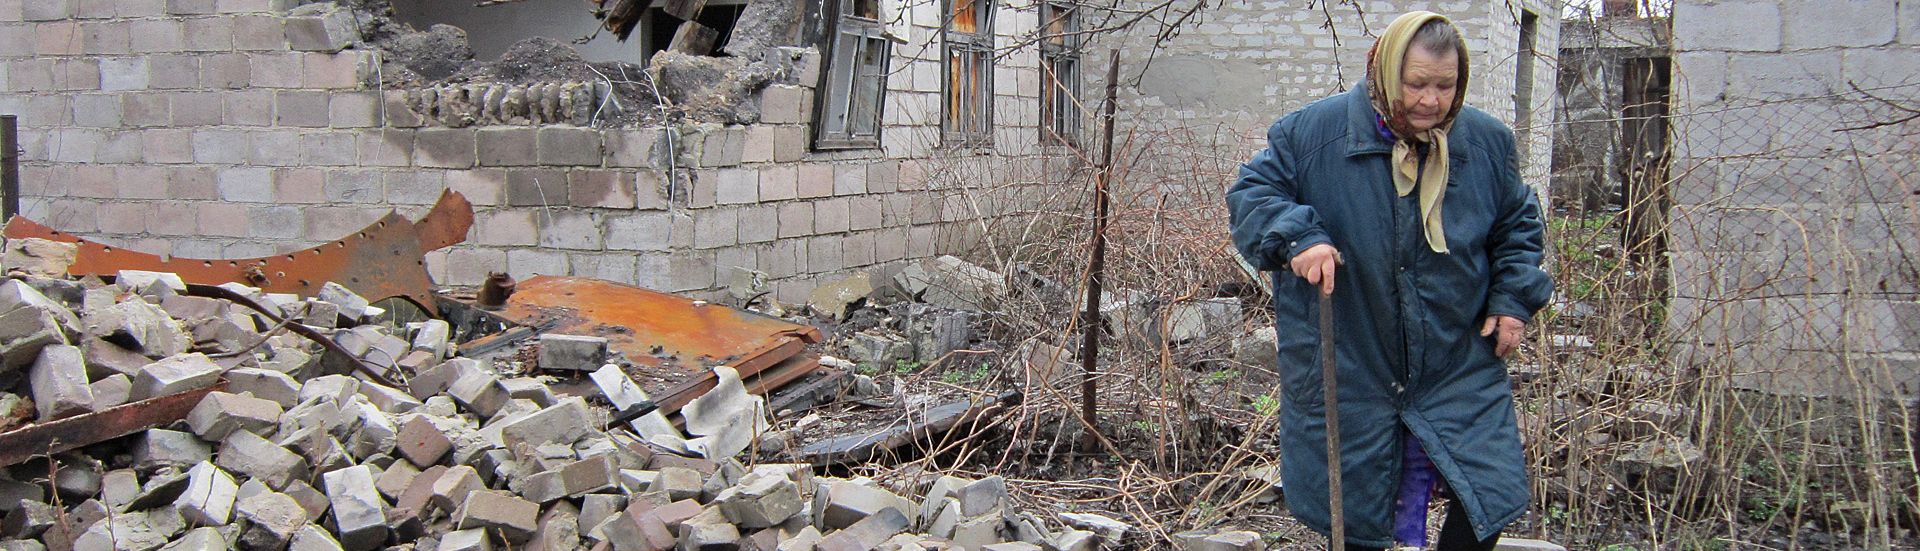 Ukraine CRISIS: Relief & Refugee Aid